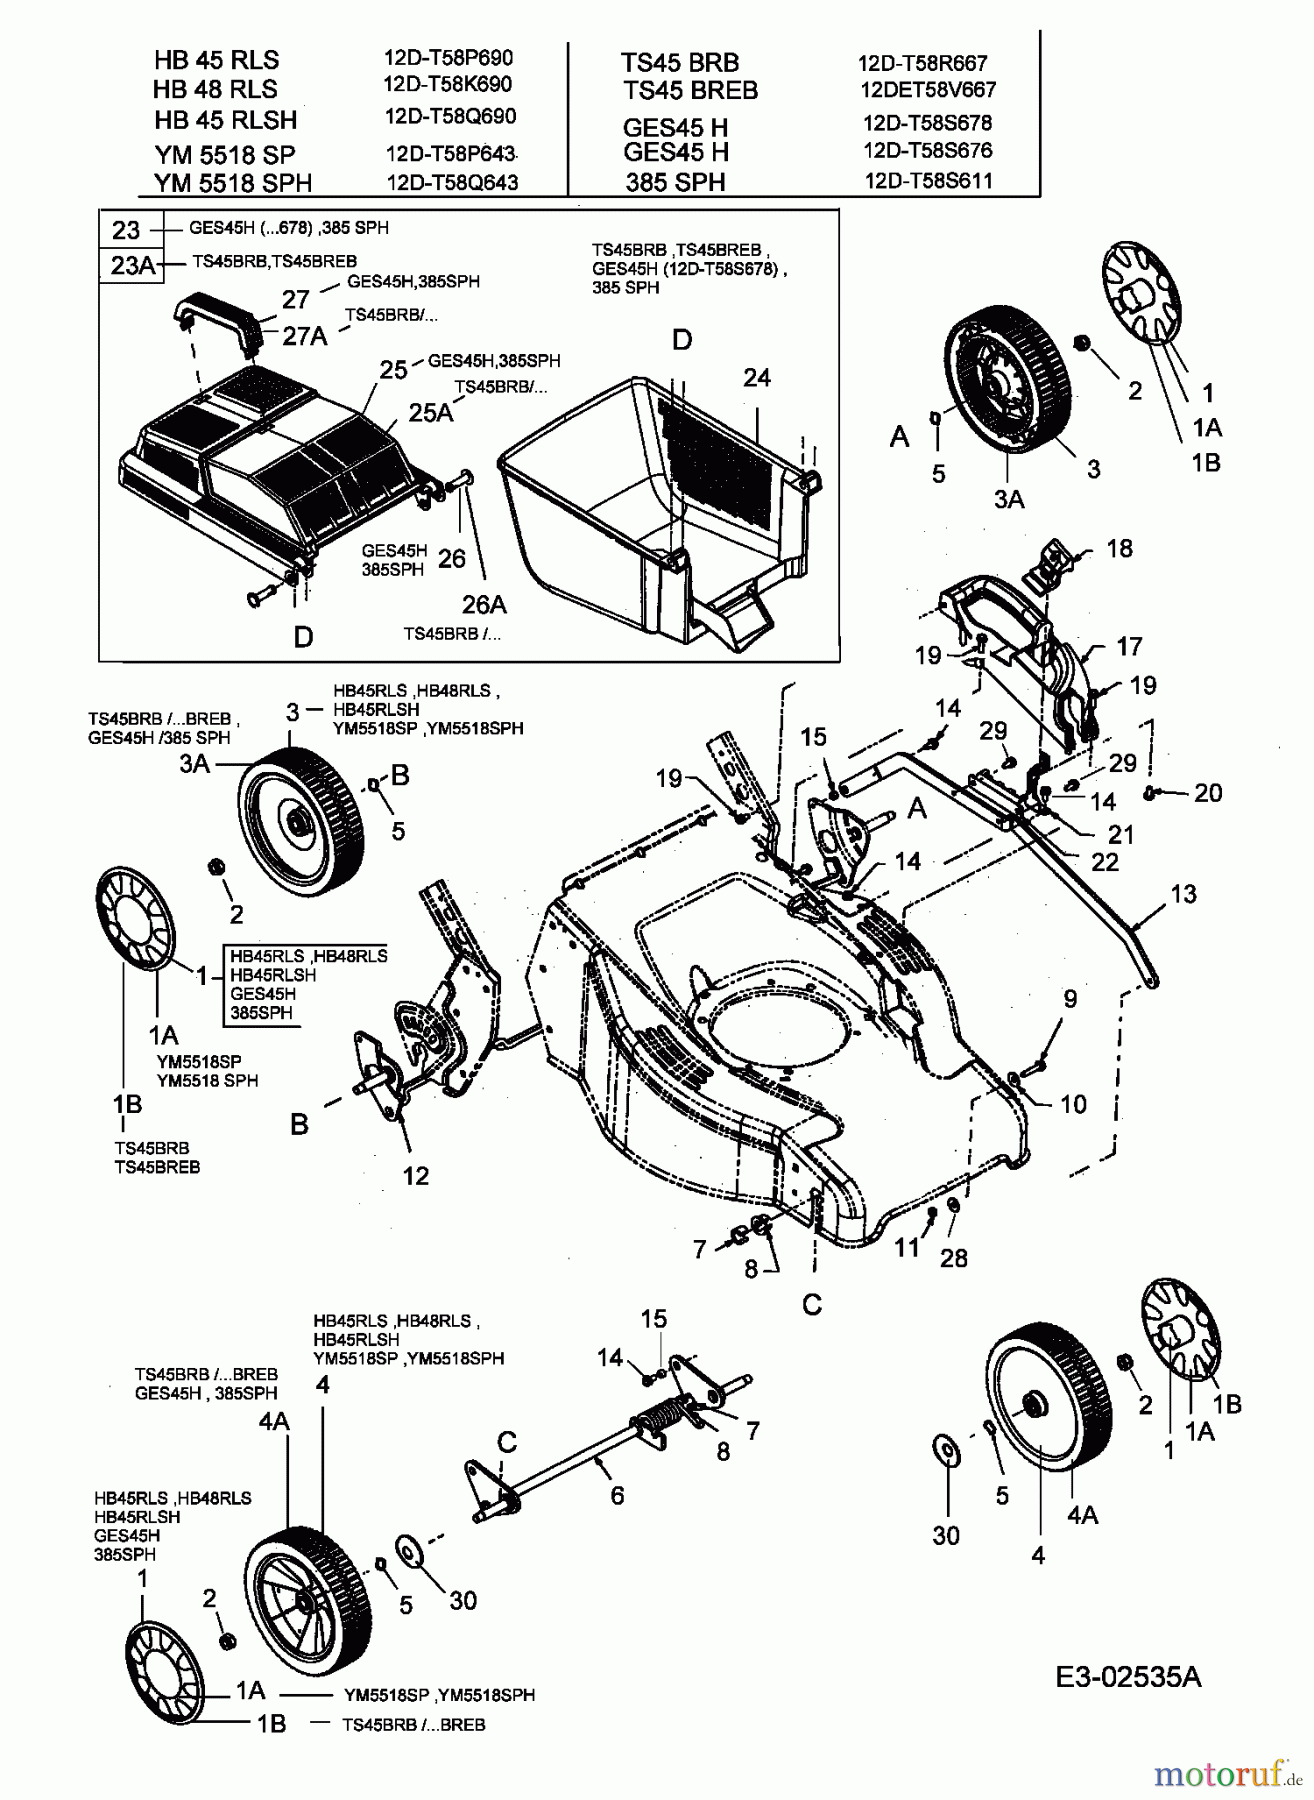  MTD Petrol mower self propelled GES 45 H 12D-T58S678  (2005) Grass catcher, Hight adjustment, Wheels